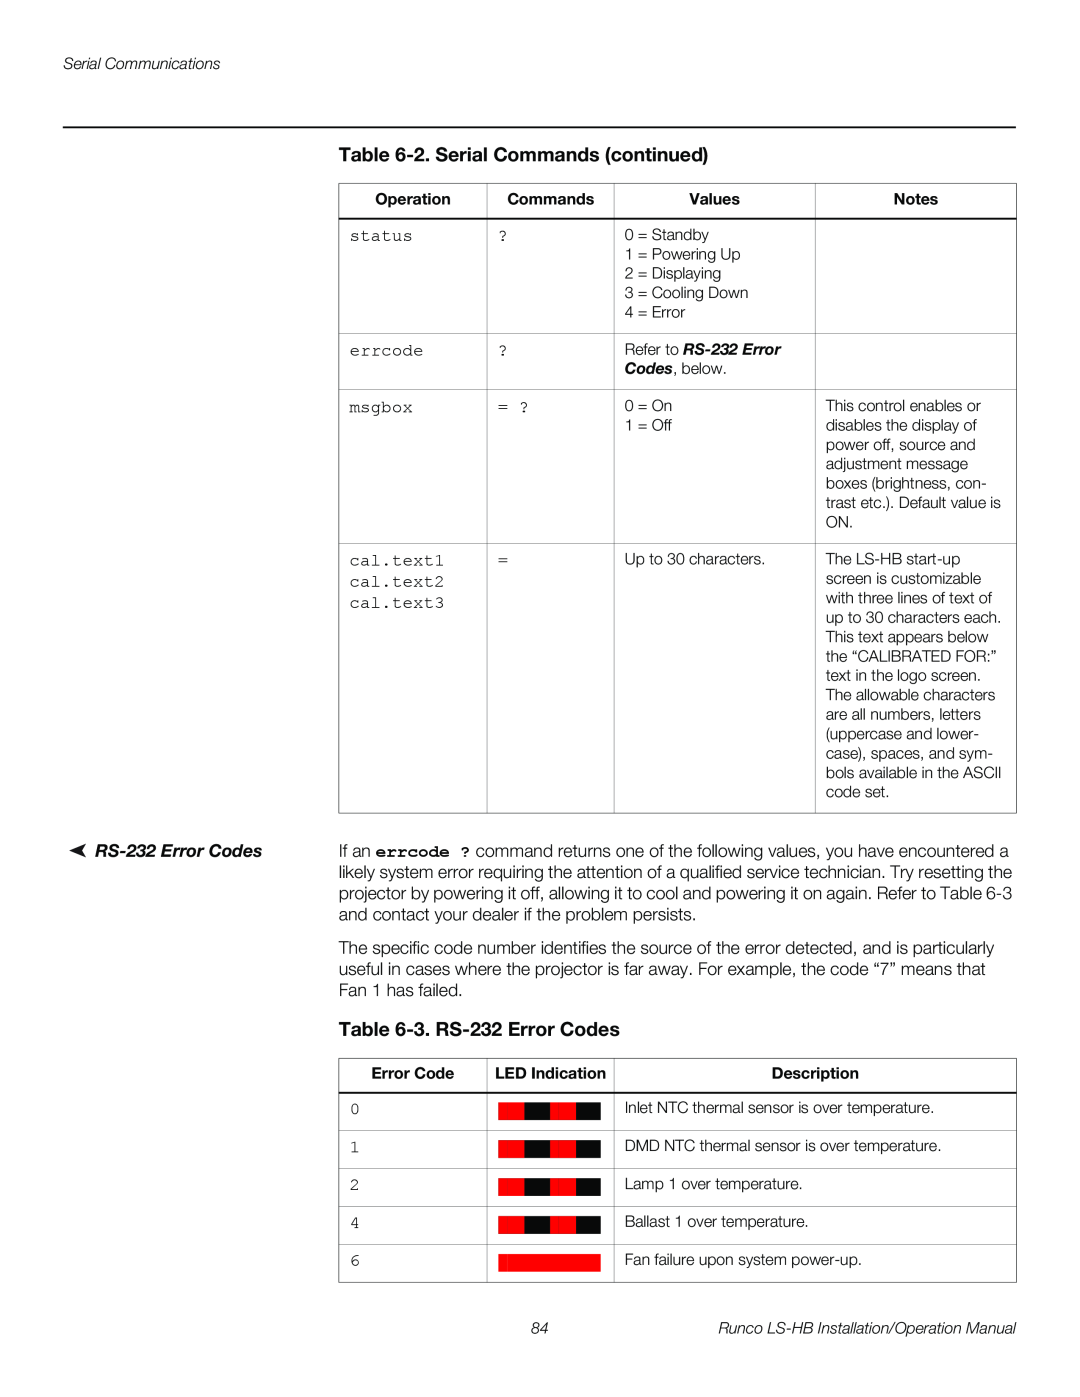 Runco LS-HB operation manual 3. RS-232 Error Codes, 2. Serial Commands continued 